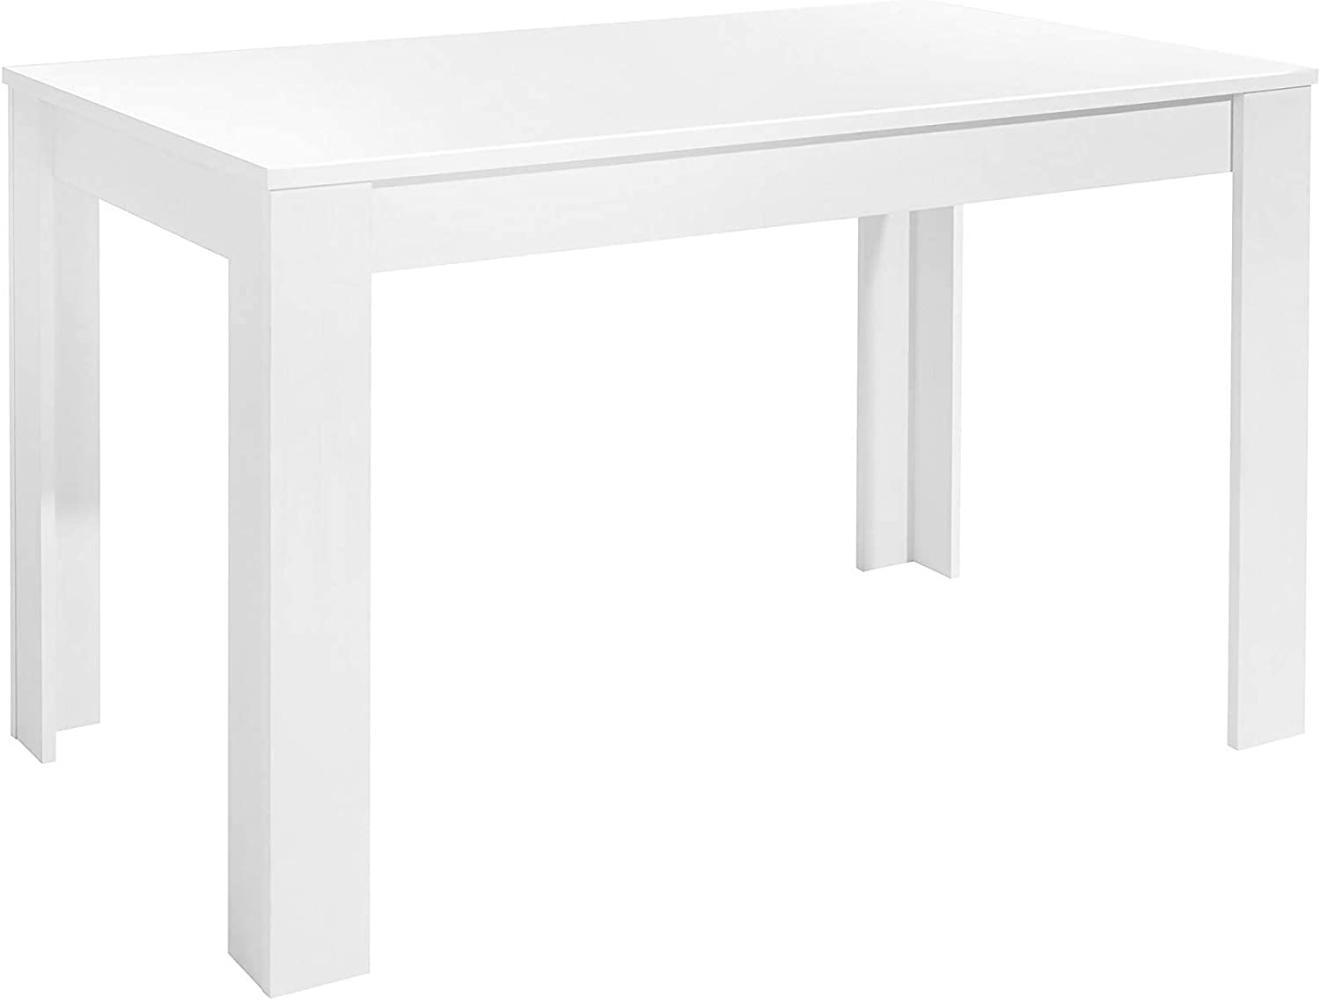 Homexperts ‘Nick' Tisch, Spanplatte, Weiß, 75 x 80 x 120 cm Bild 1